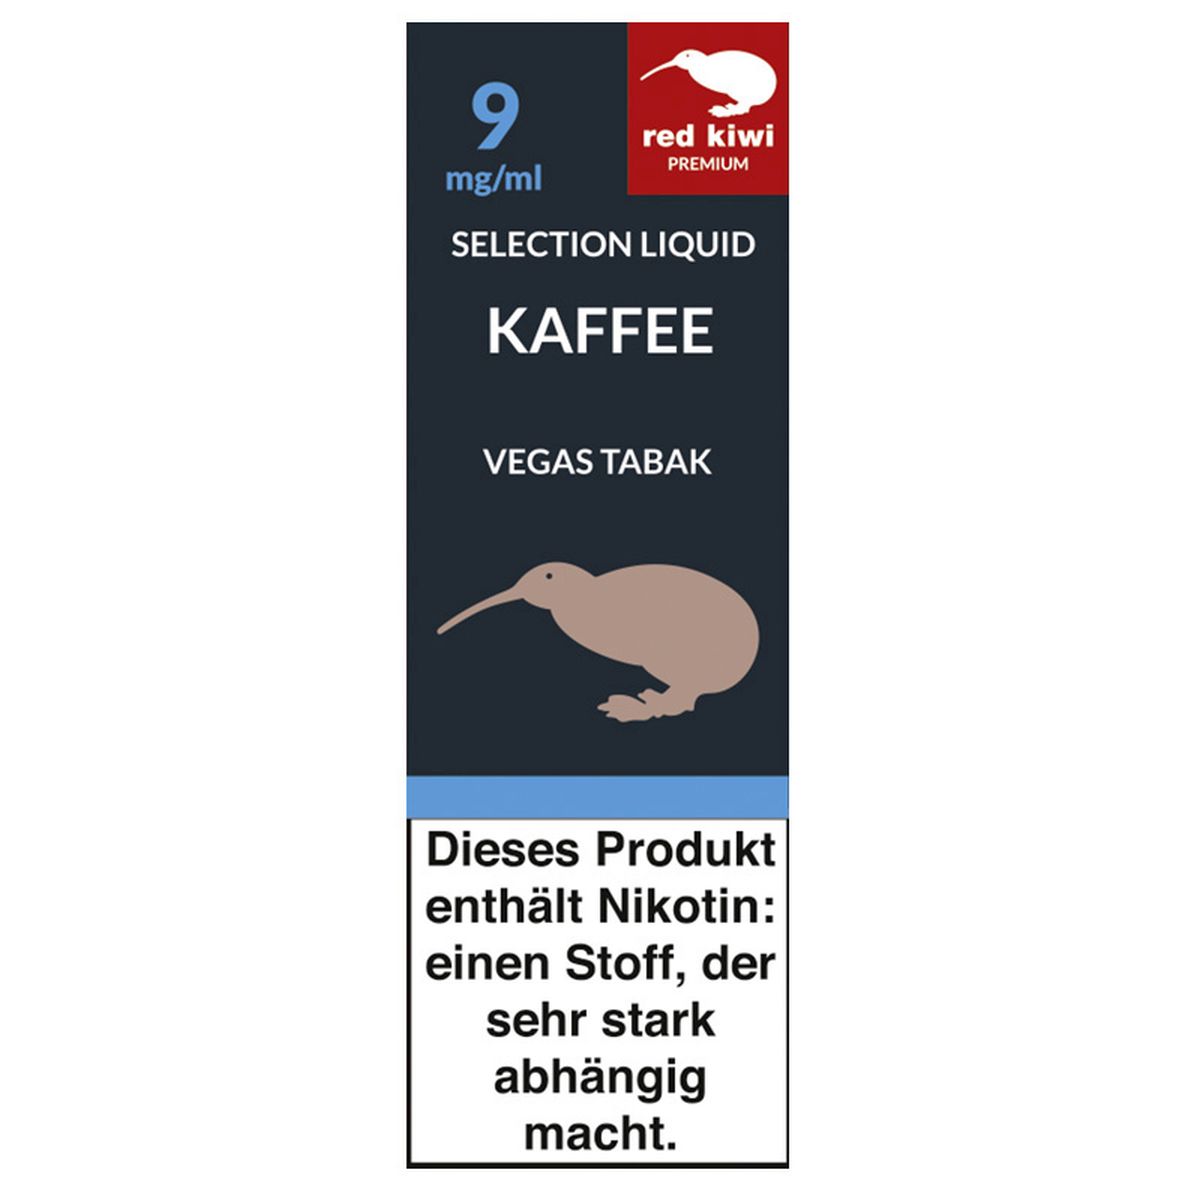 Red Kiwi Red Kiwi eLiquid Selection Kaffee Vegas Tabak 9mg Nikotin/ml bei www.Tabakring.de kaufen